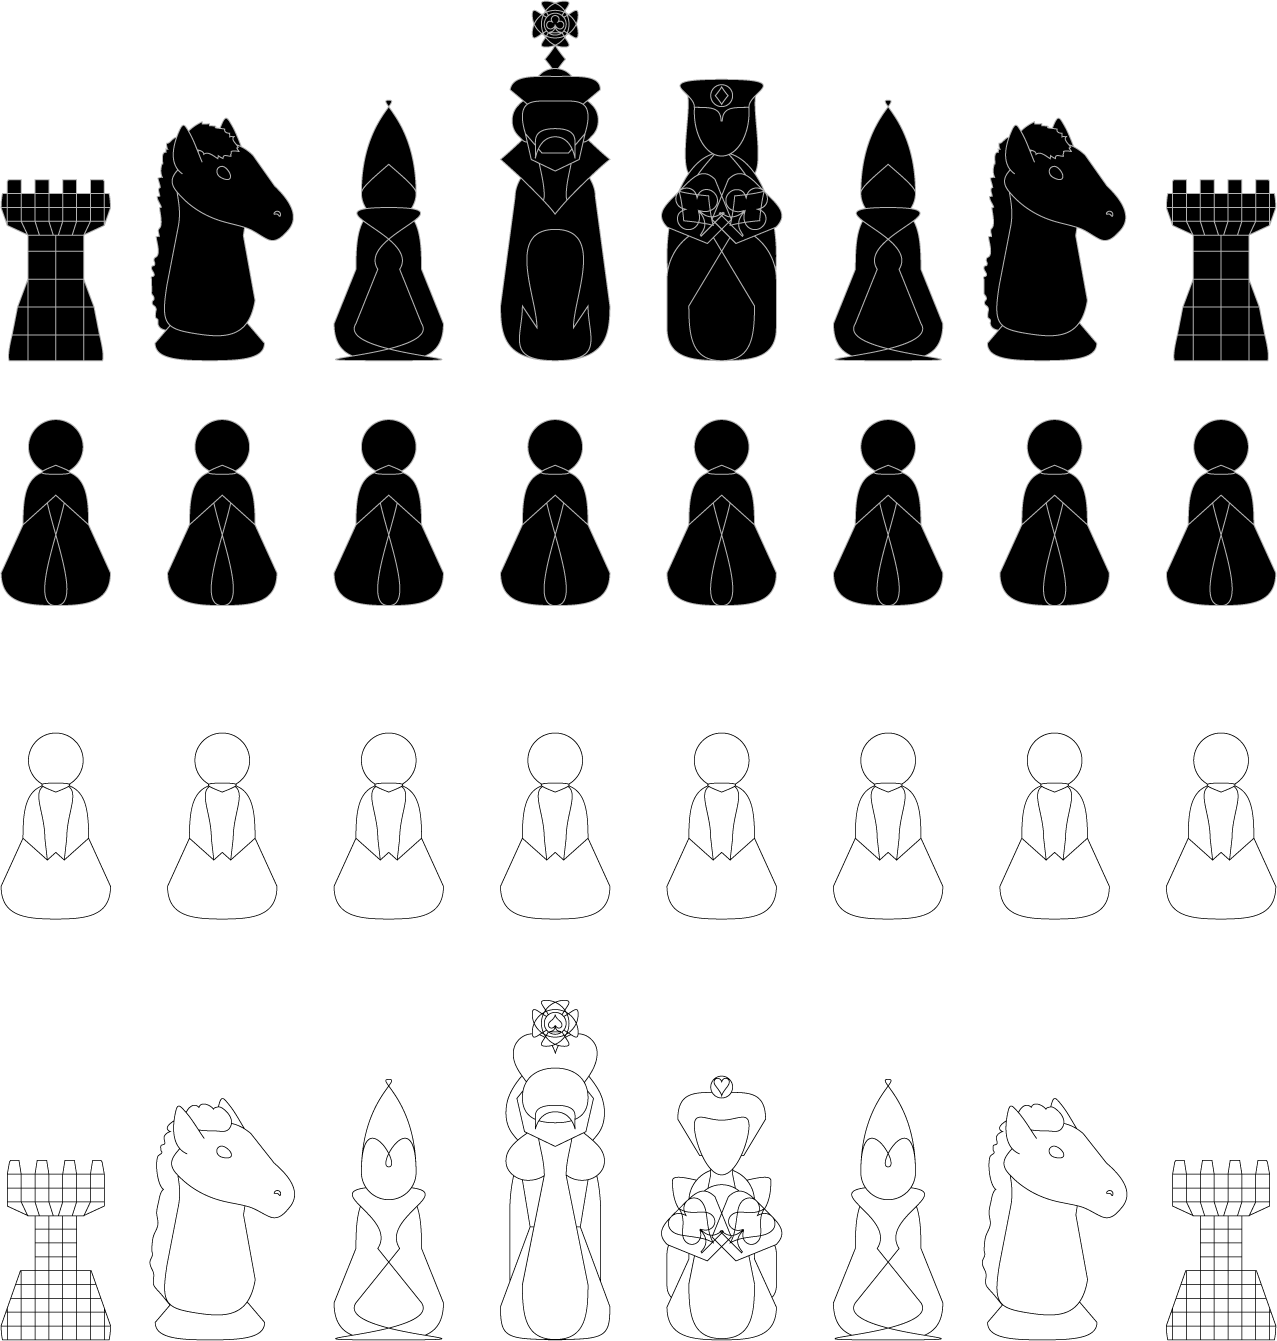 Piezas de ajedrez PNG by nayareth on DeviantArt